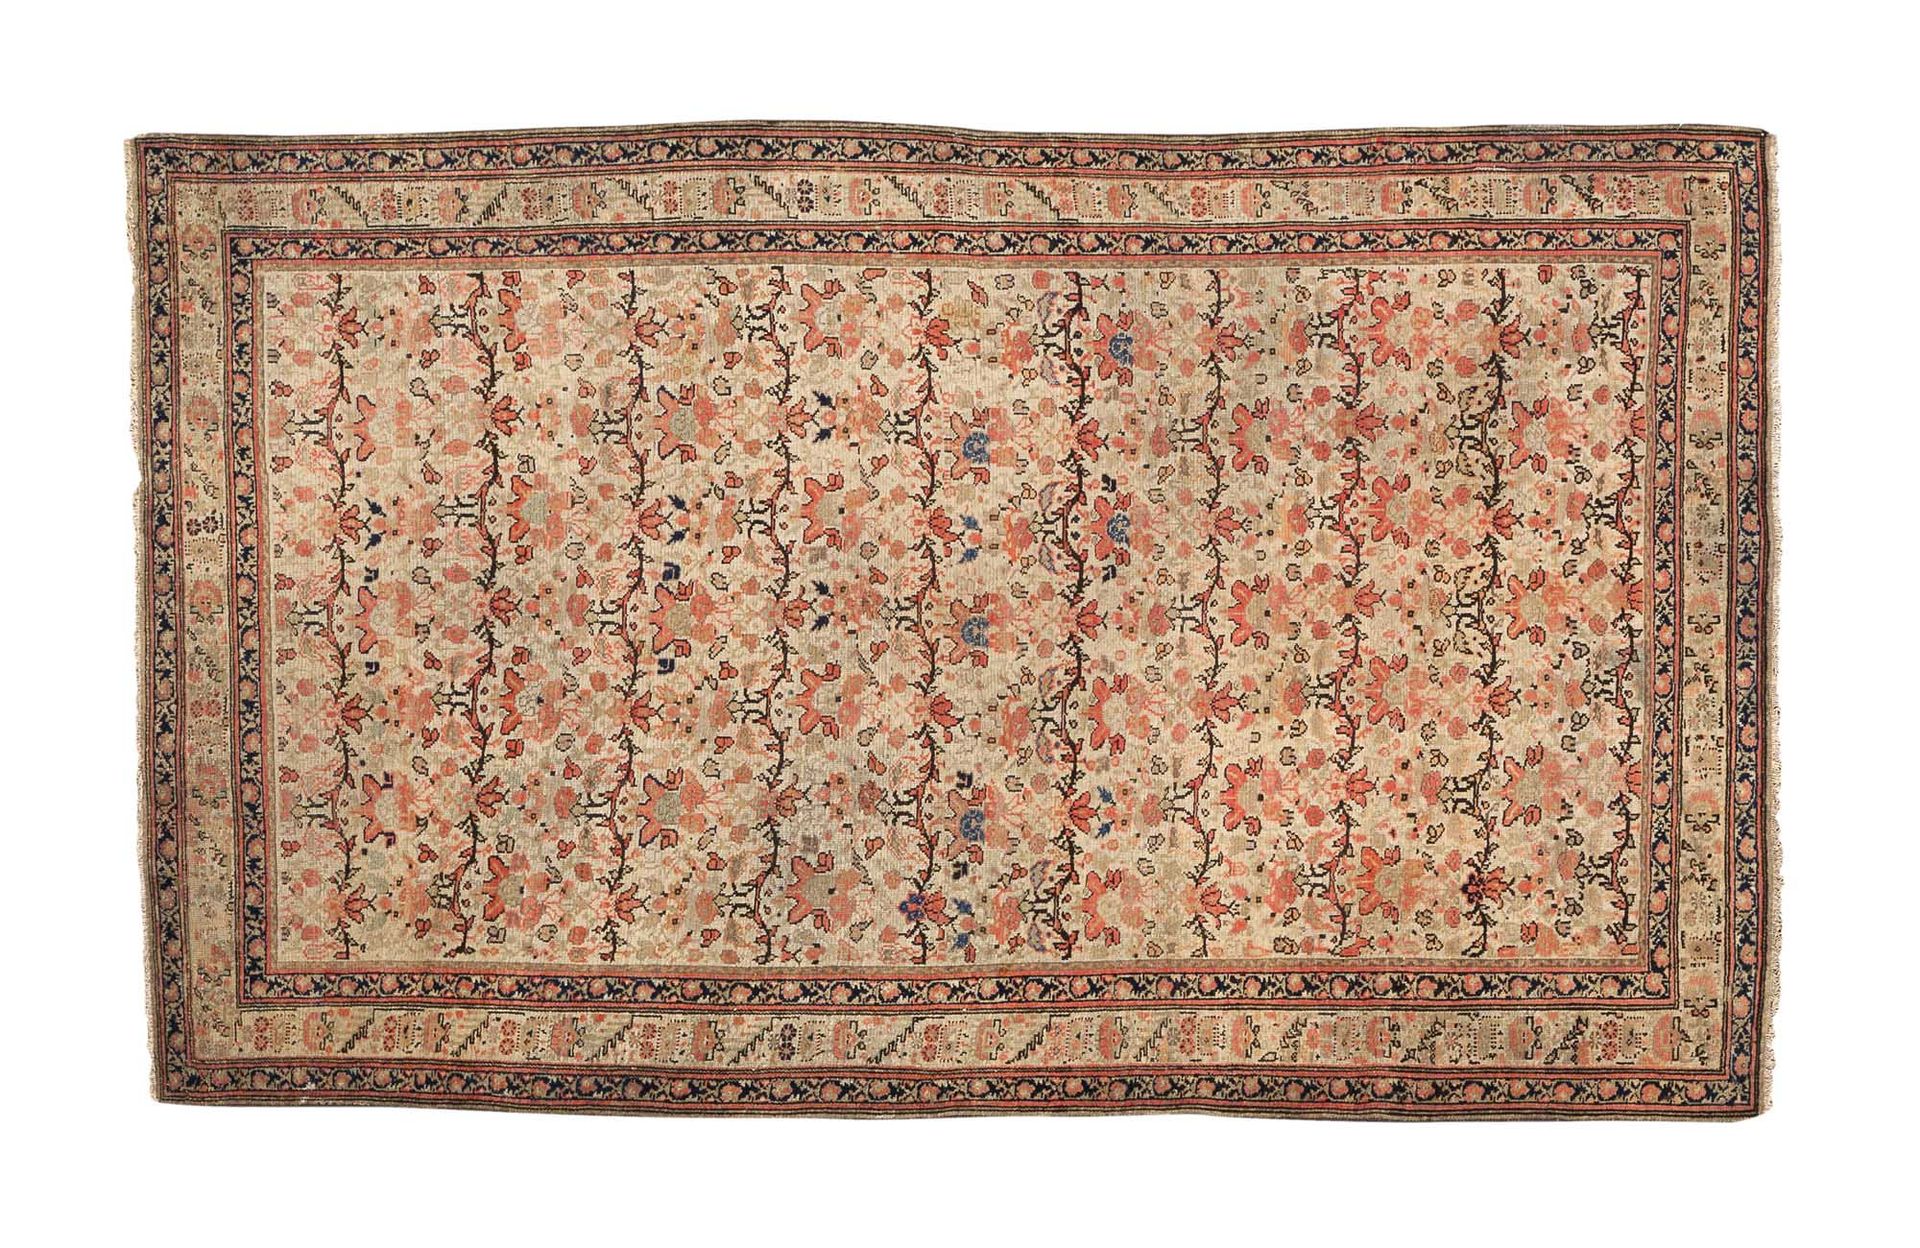 Null Bel tappeto MELAYER (Persia), fine del 19° secolo

Design chiamato "Zili su&hellip;